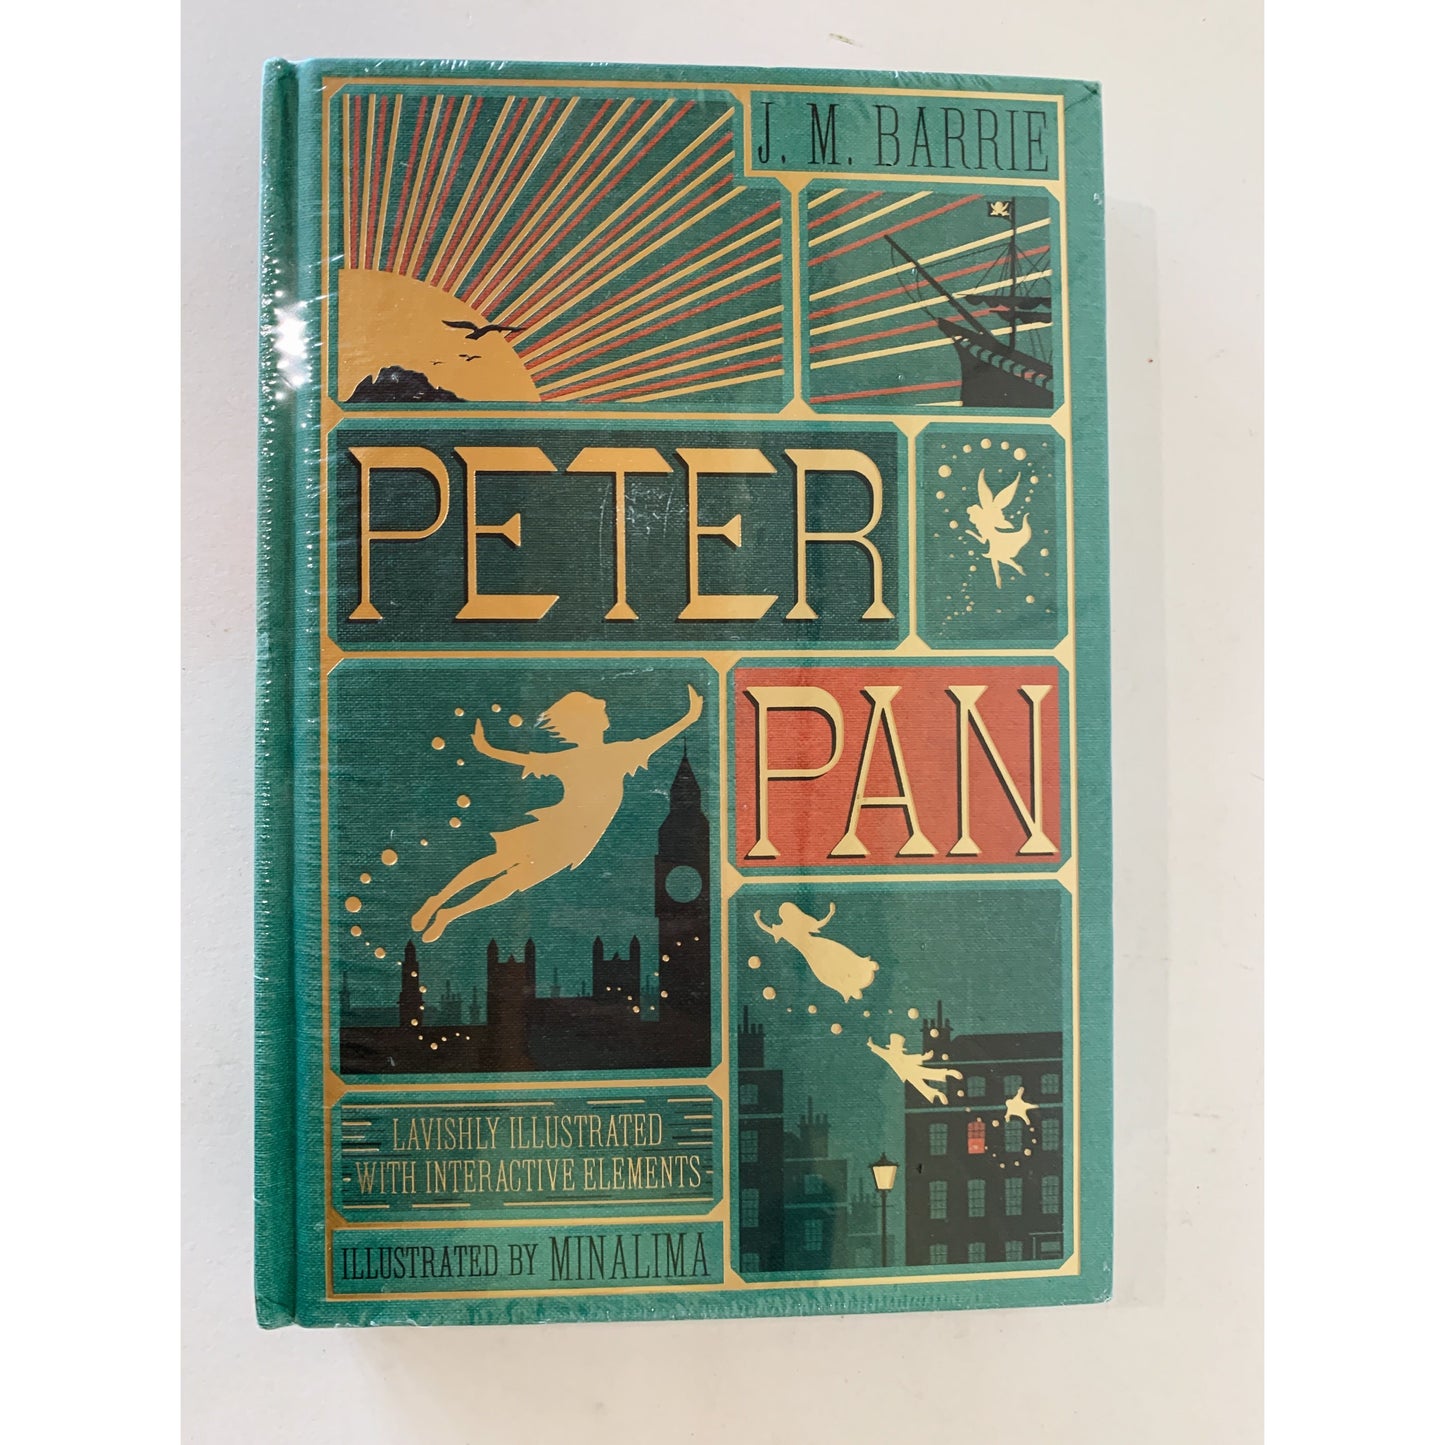 Peter Pan, J. M. Barrie. Modern Pop-Up Interactive Edition